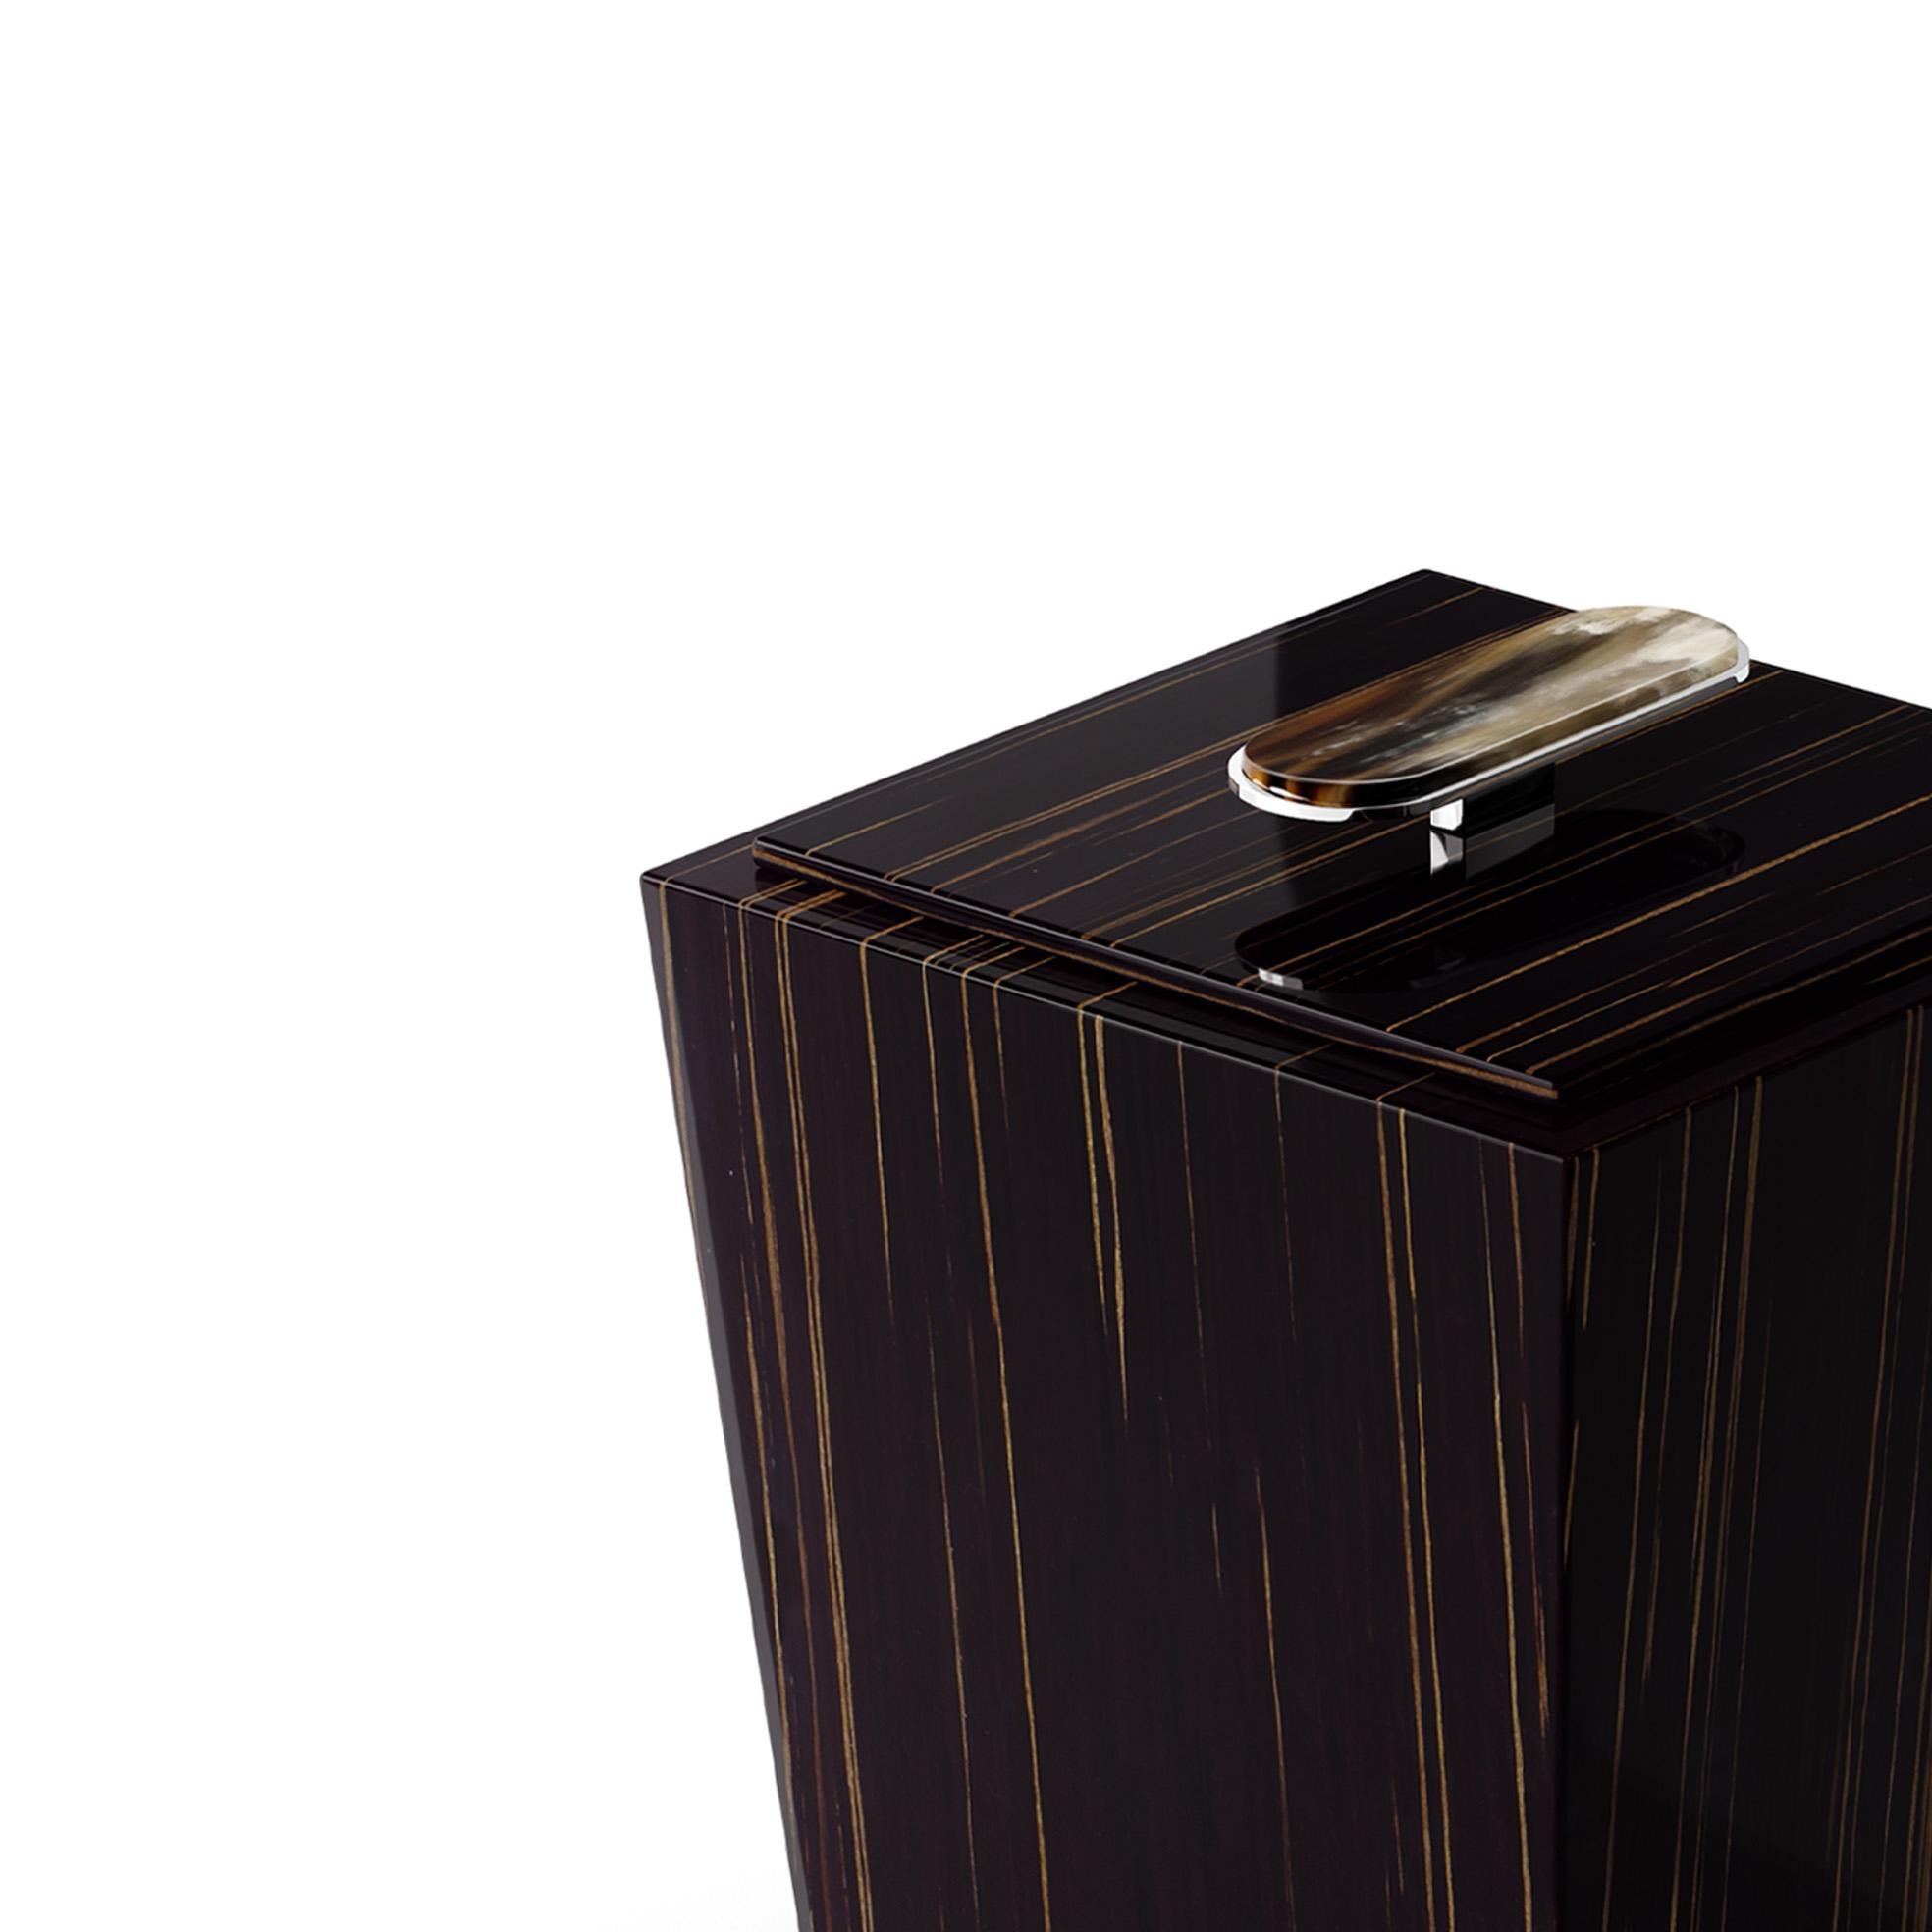 Der Papierkorb Bicco ist ein raffiniertes und vielseitiges Accessoire, das jedes Badezimmer oder Büro aufwertet. Bicco ist aus glänzendem Ebenholz gefertigt und verfügt über einen praktischen Deckel mit einem eleganten Griff aus Corno Italiano und